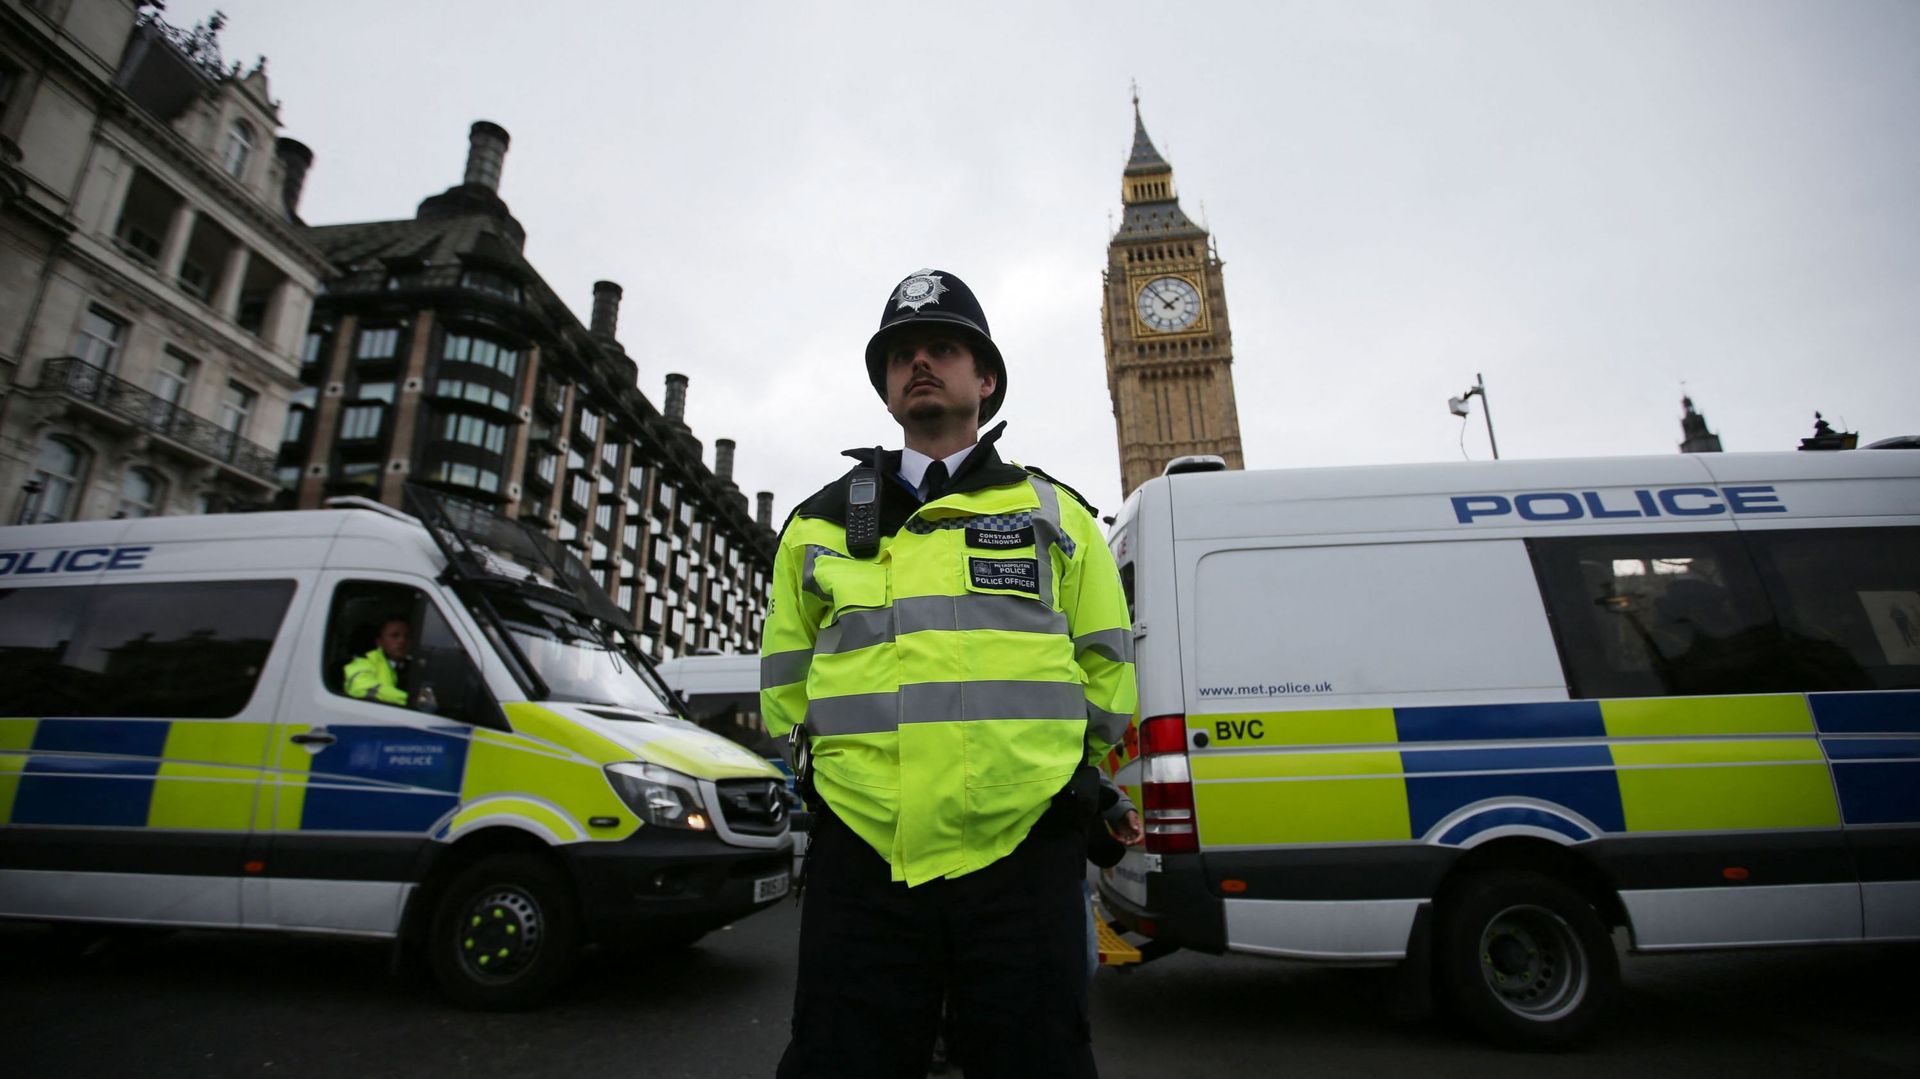 La police de Londres a annoncé samedi enquêter après la publication massive de témoignages d'abus, harcèlement et agressions sexuelles sur un site internet.